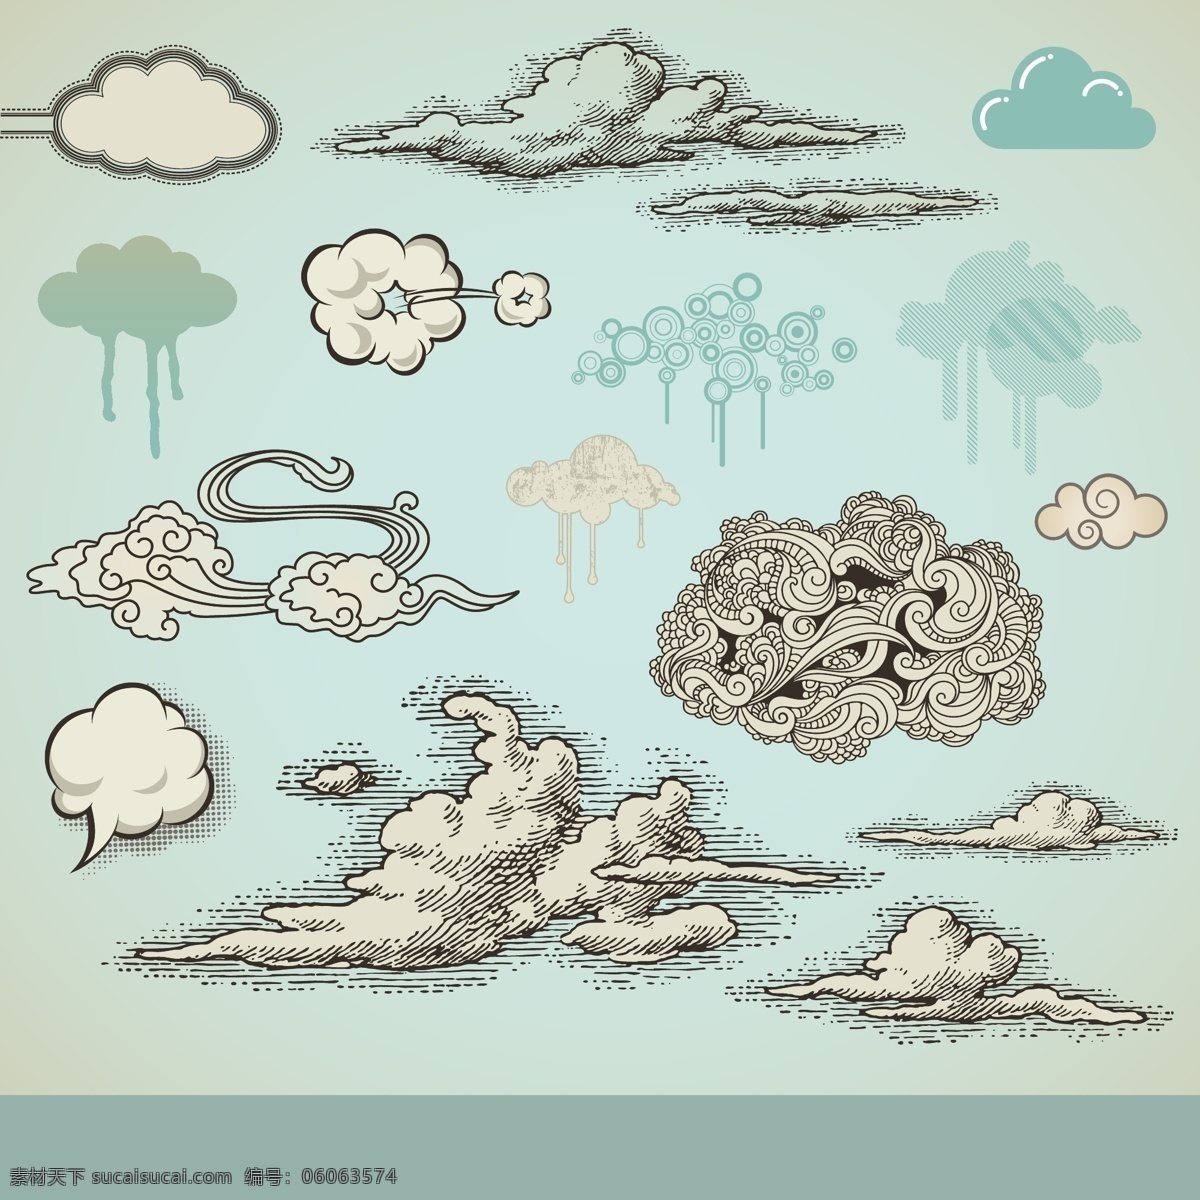 钢笔画 风格 云彩 矢量 云朵 对话泡泡 对话框 爆炸 潮流元素 潮流设计 矢量素材 自然风景 自然景观